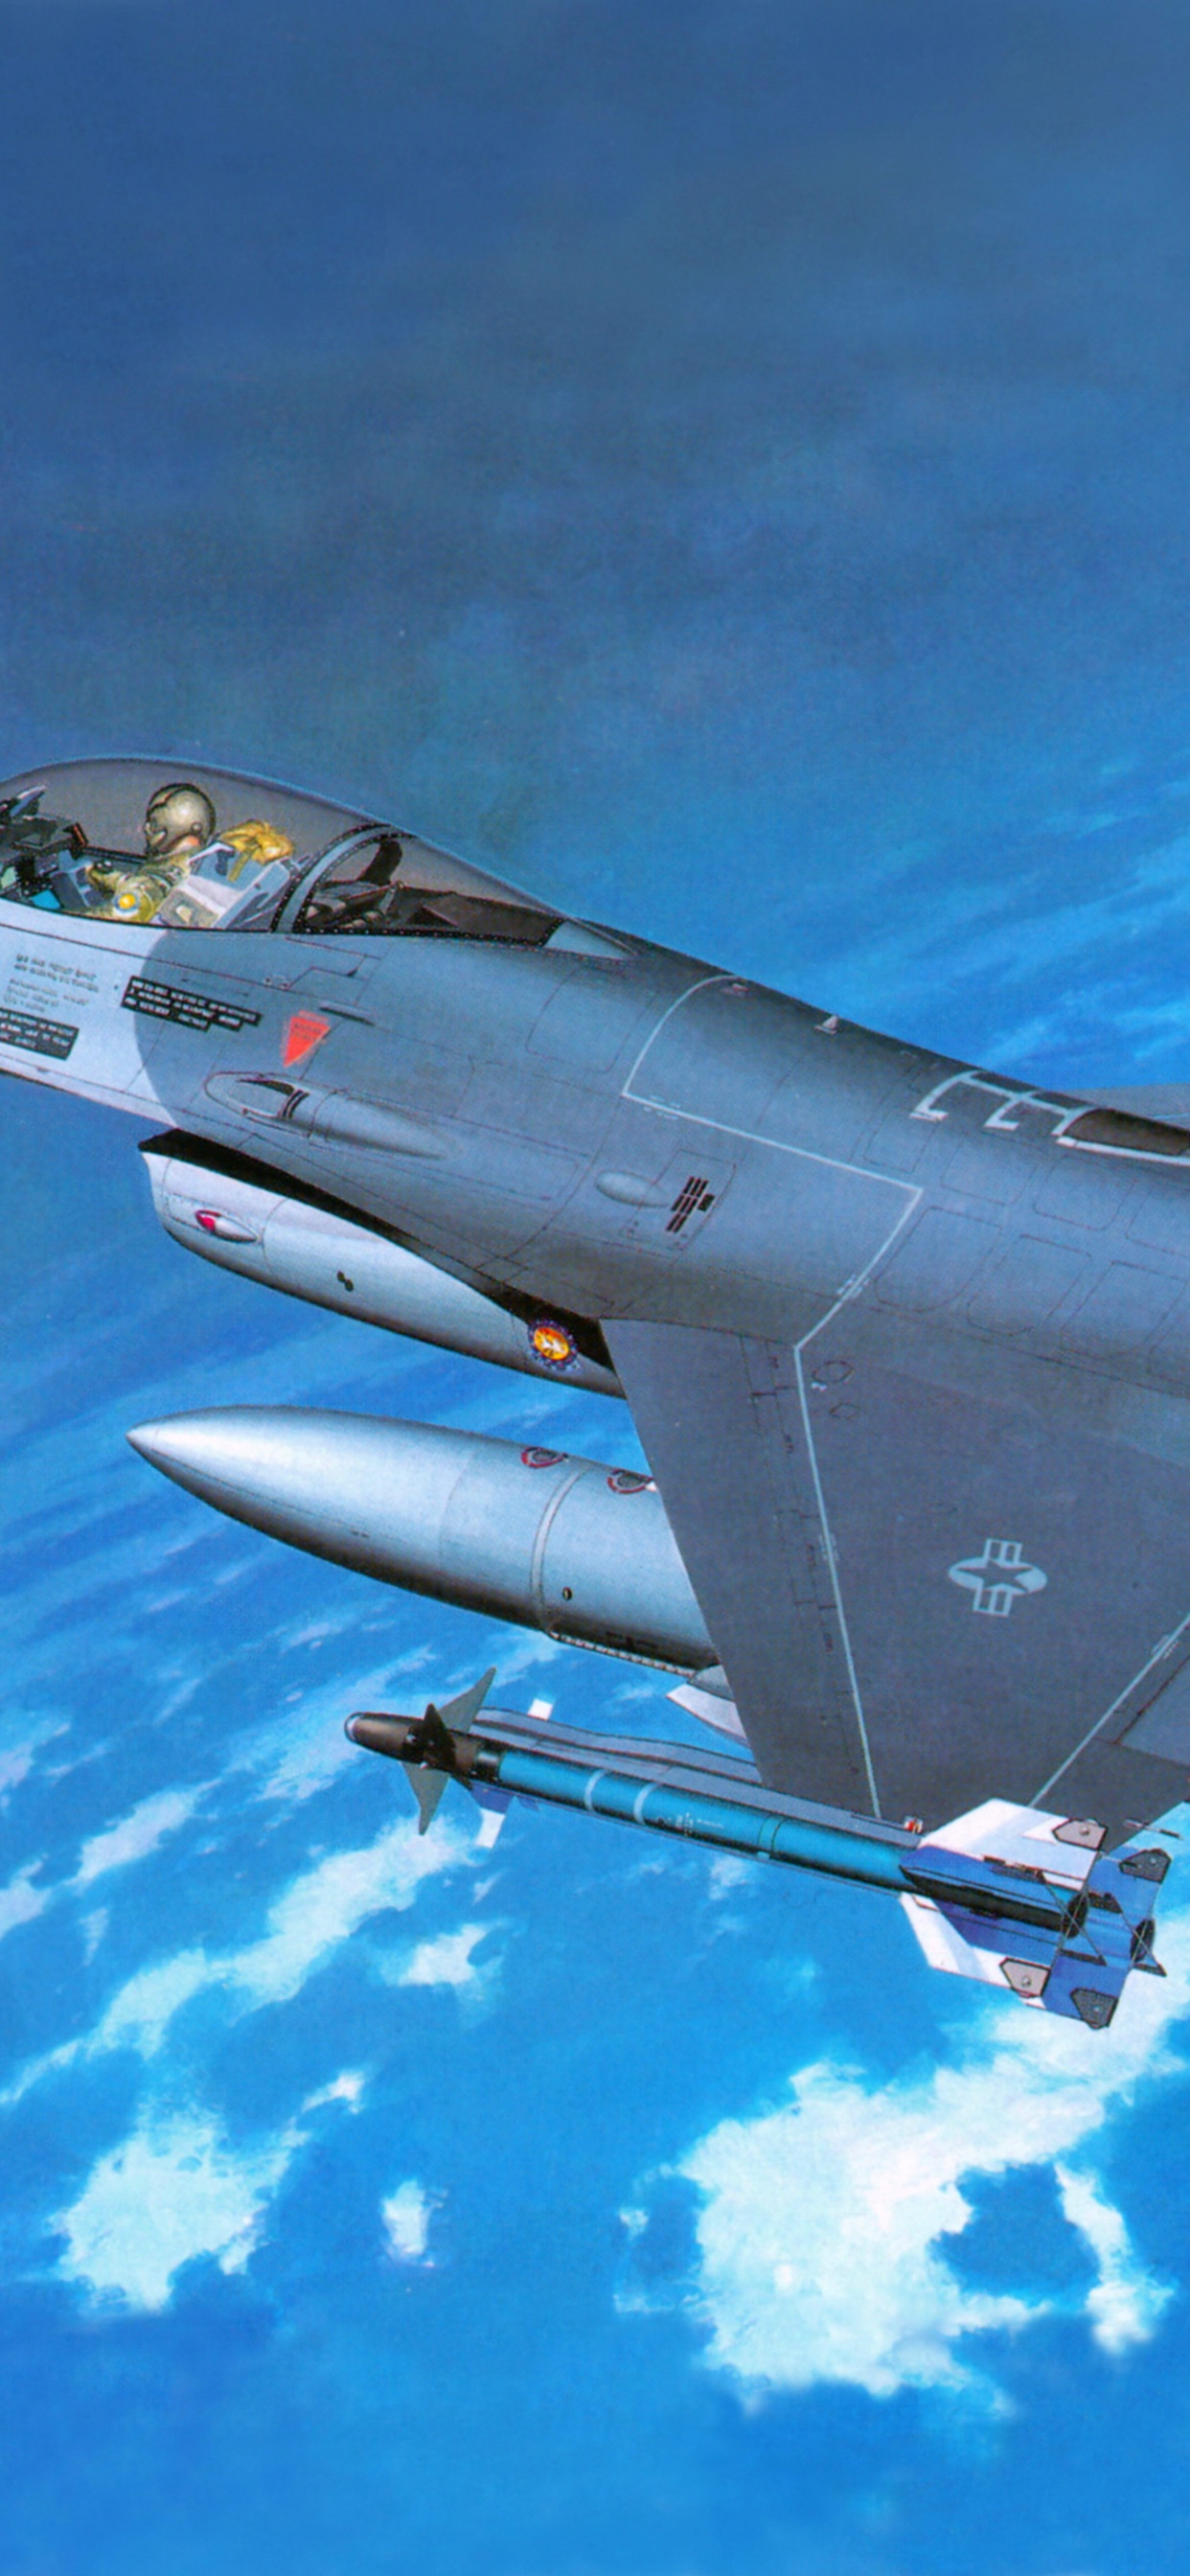 长谷川公司, 塑料模型, 军用飞机, 航空, 空军 壁纸 1242x2688 允许